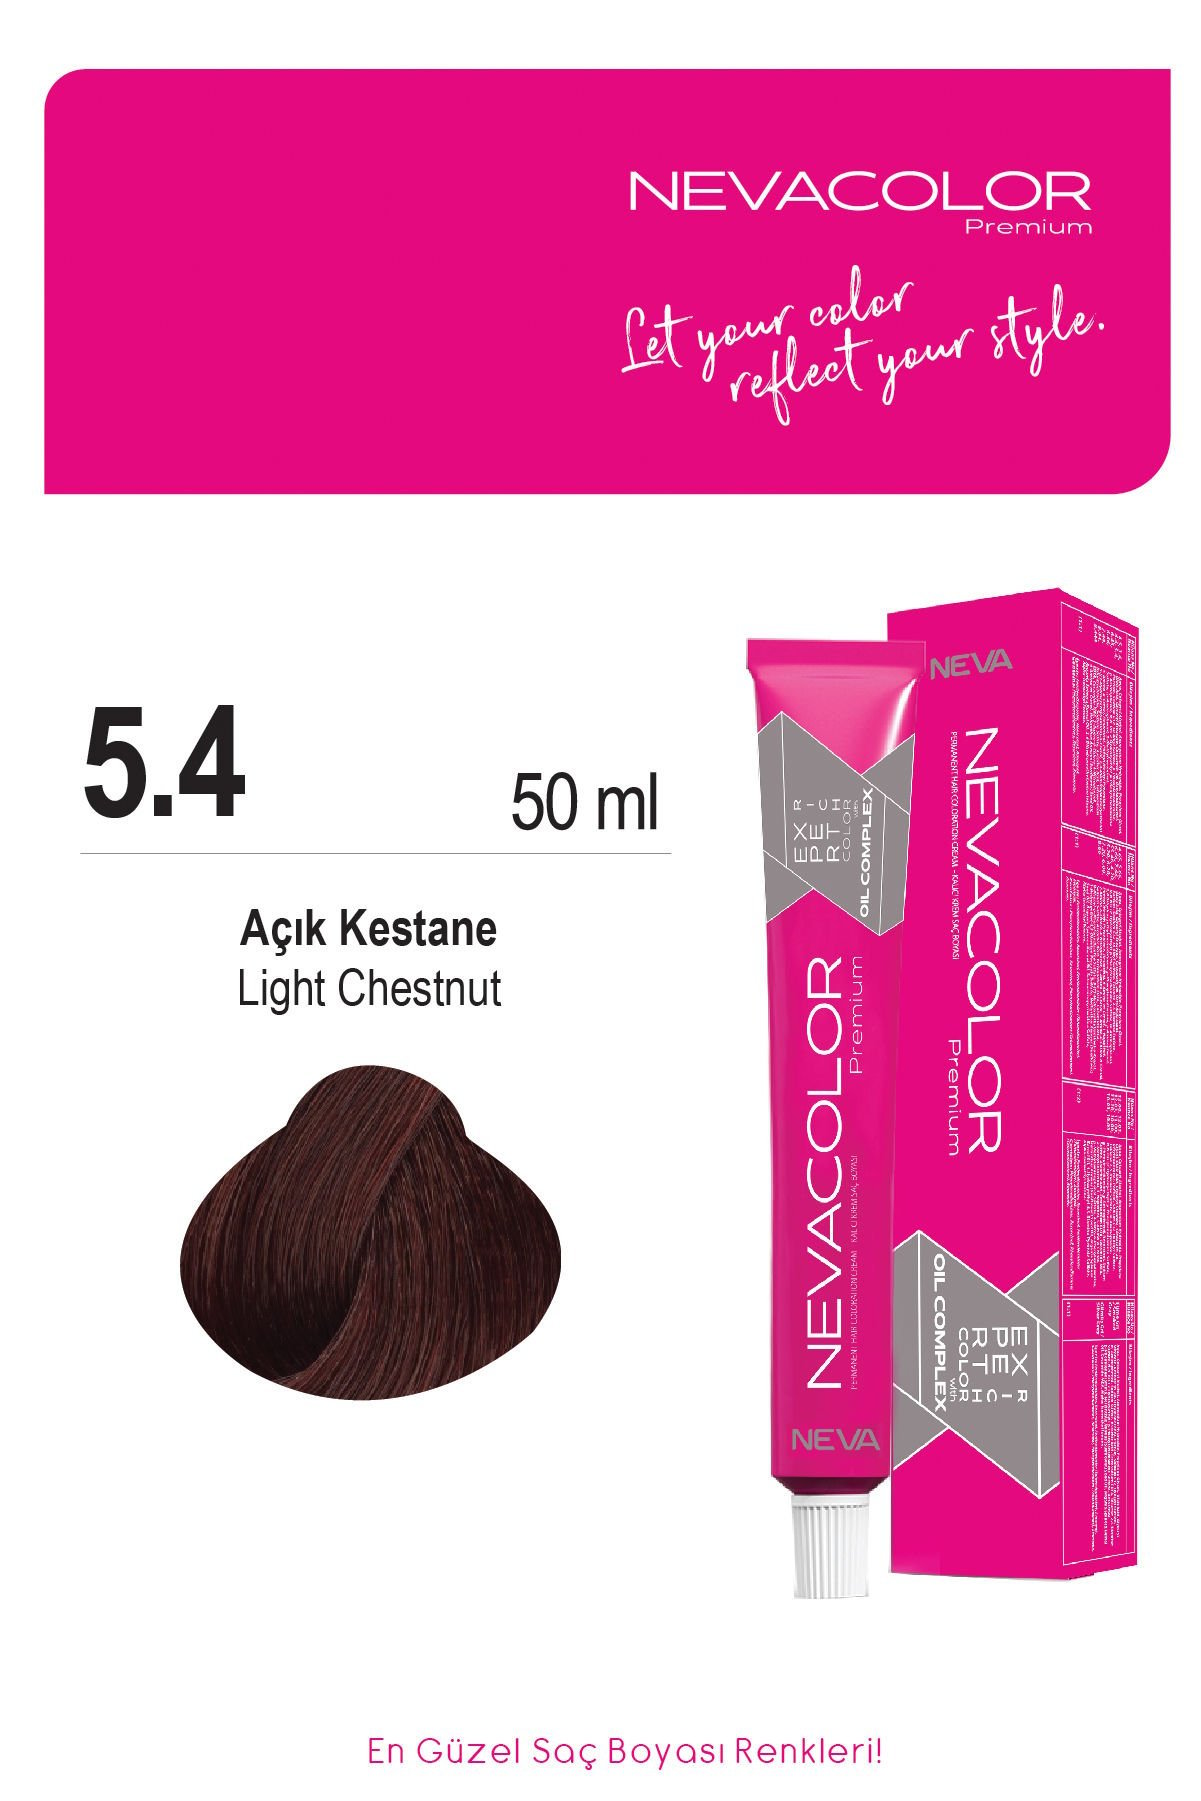 Nevacolor Premium 5.4 Açık Kestane - Kalıcı Krem Saç Boyası 50 g Tüp